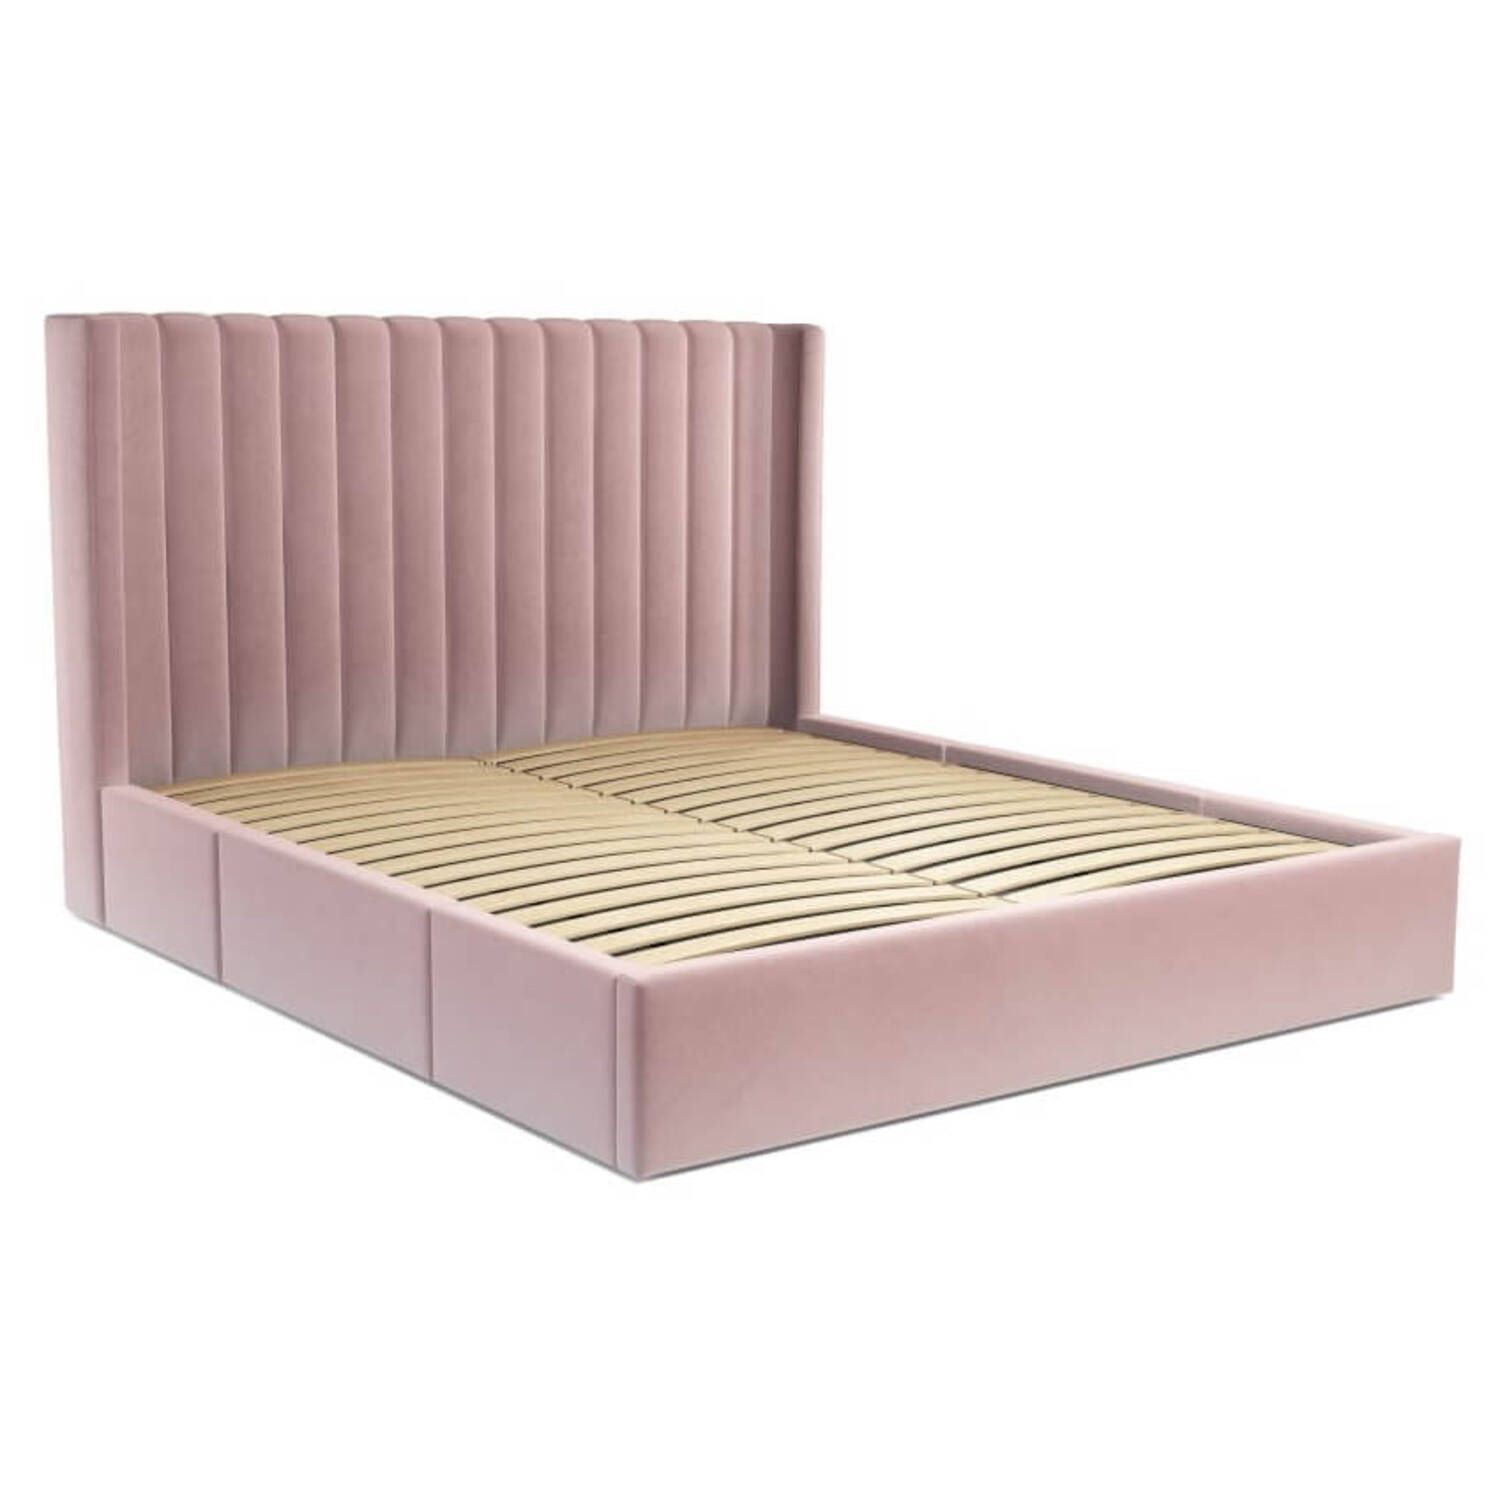 Кровать Cory с выдвижными ящиками для хранения, розовая